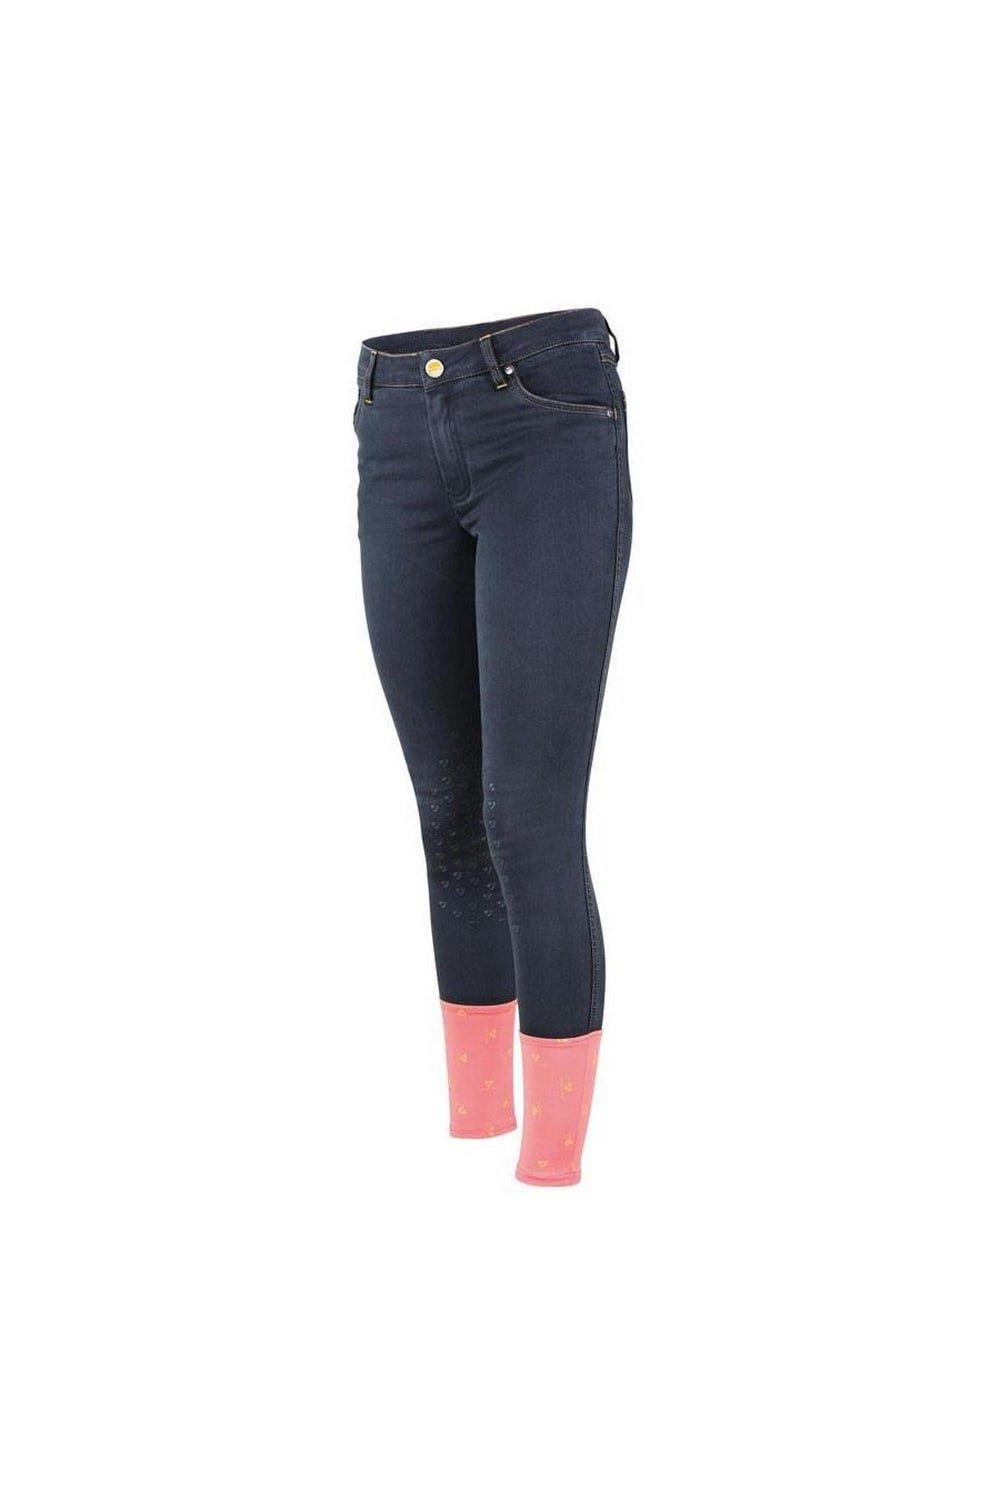 Джинсовые бриджи Putney Aubrion, черный бриджи джинсовые 42 44 размер